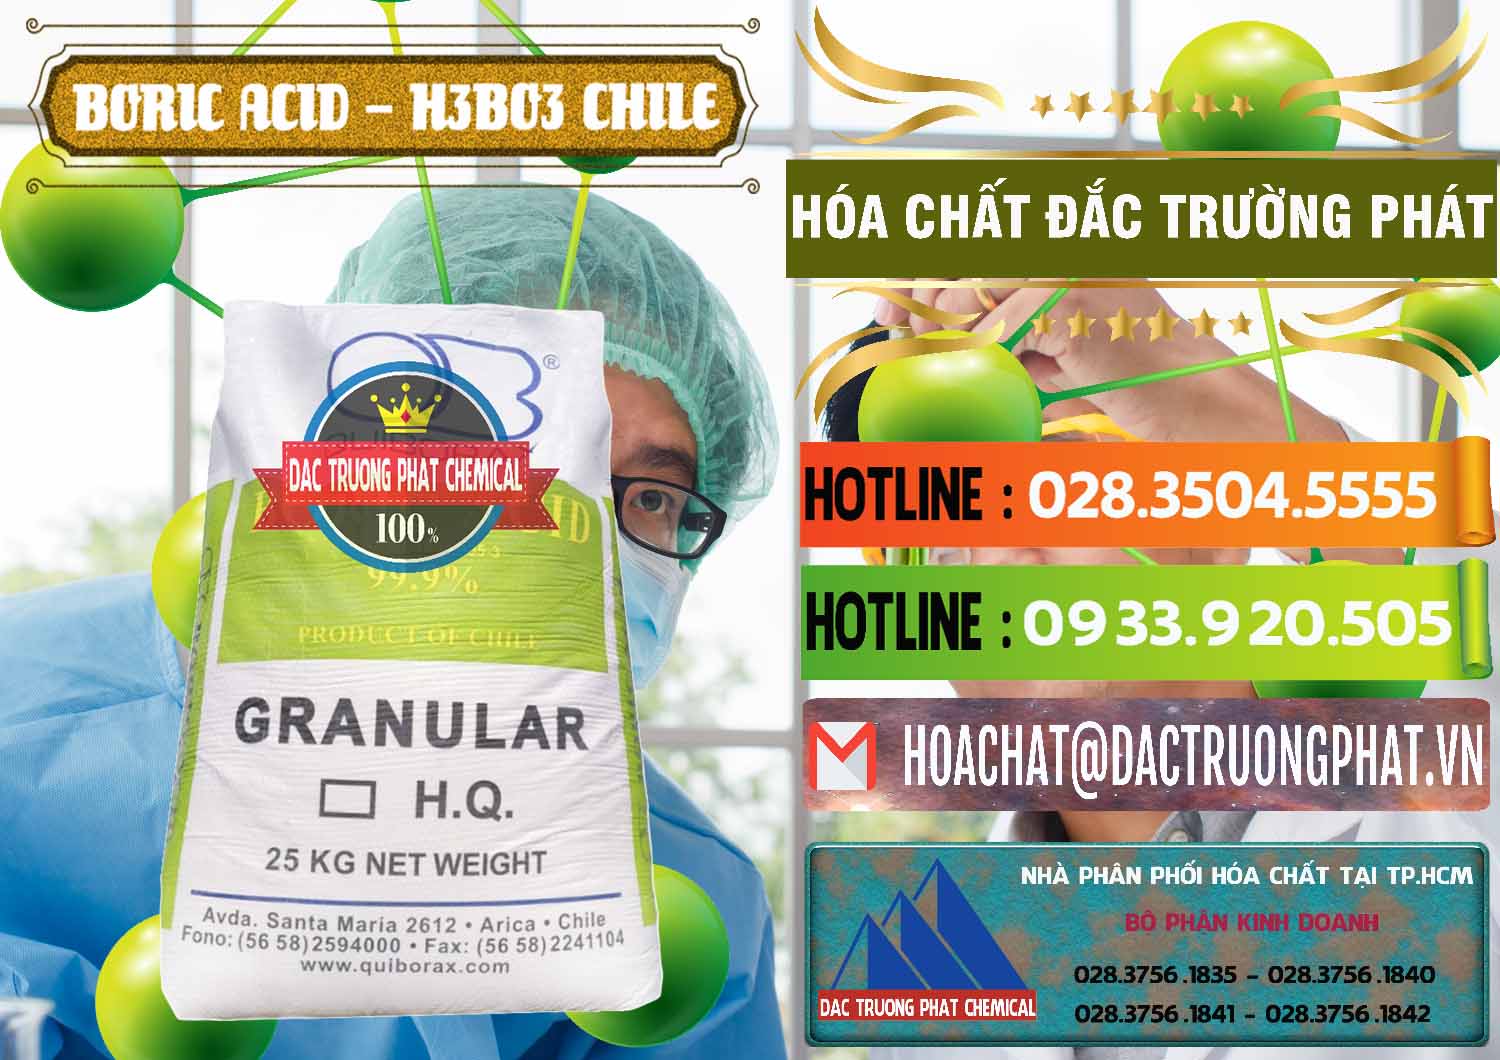 Nơi cung cấp và bán Acid Boric – Axit Boric H3BO3 99% Quiborax Chile - 0281 - Công ty chuyên kinh doanh - phân phối hóa chất tại TP.HCM - cungcaphoachat.com.vn